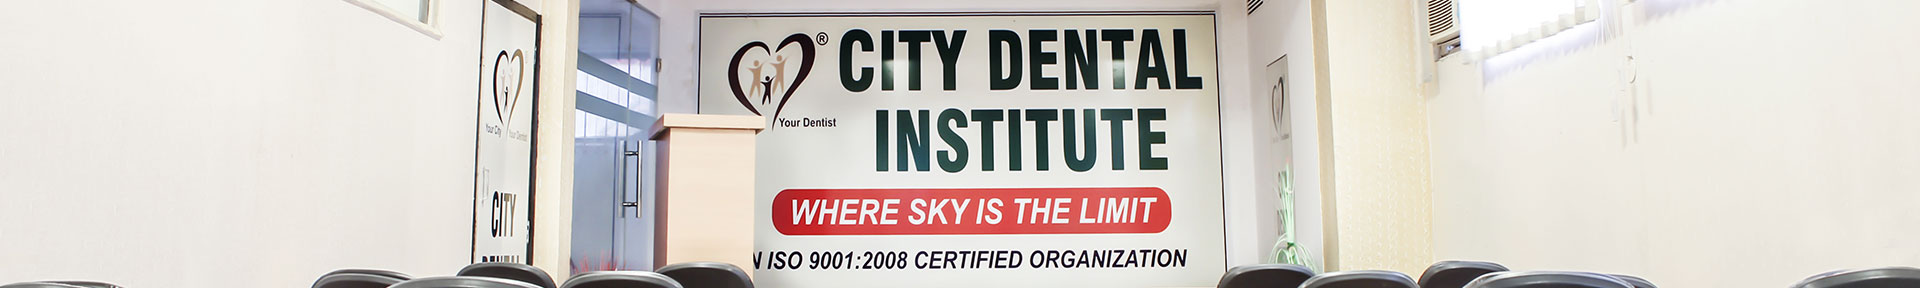 City Dental Institute